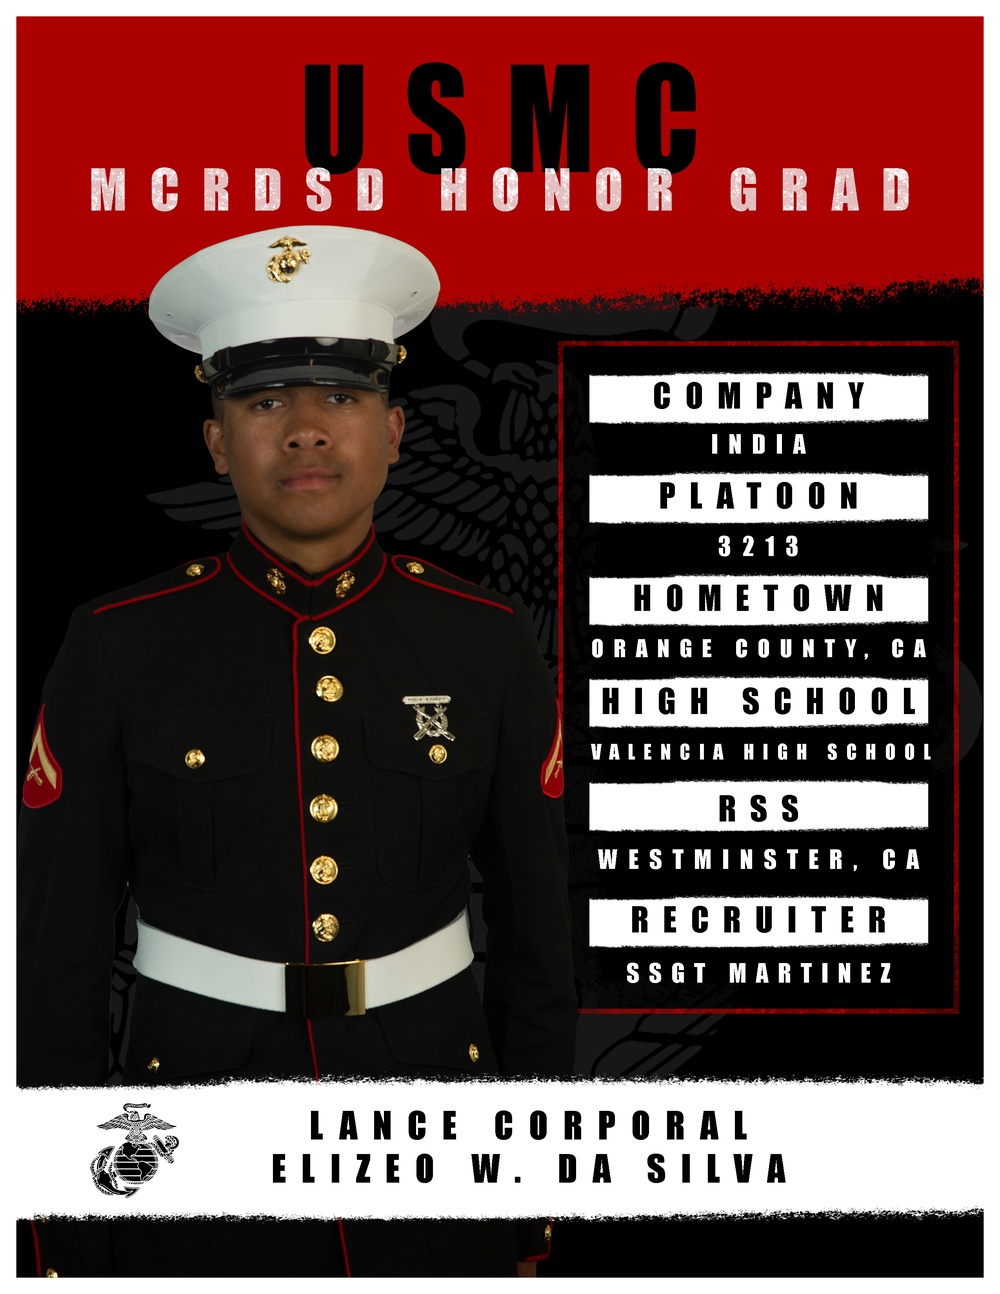 India Company Honor Grad